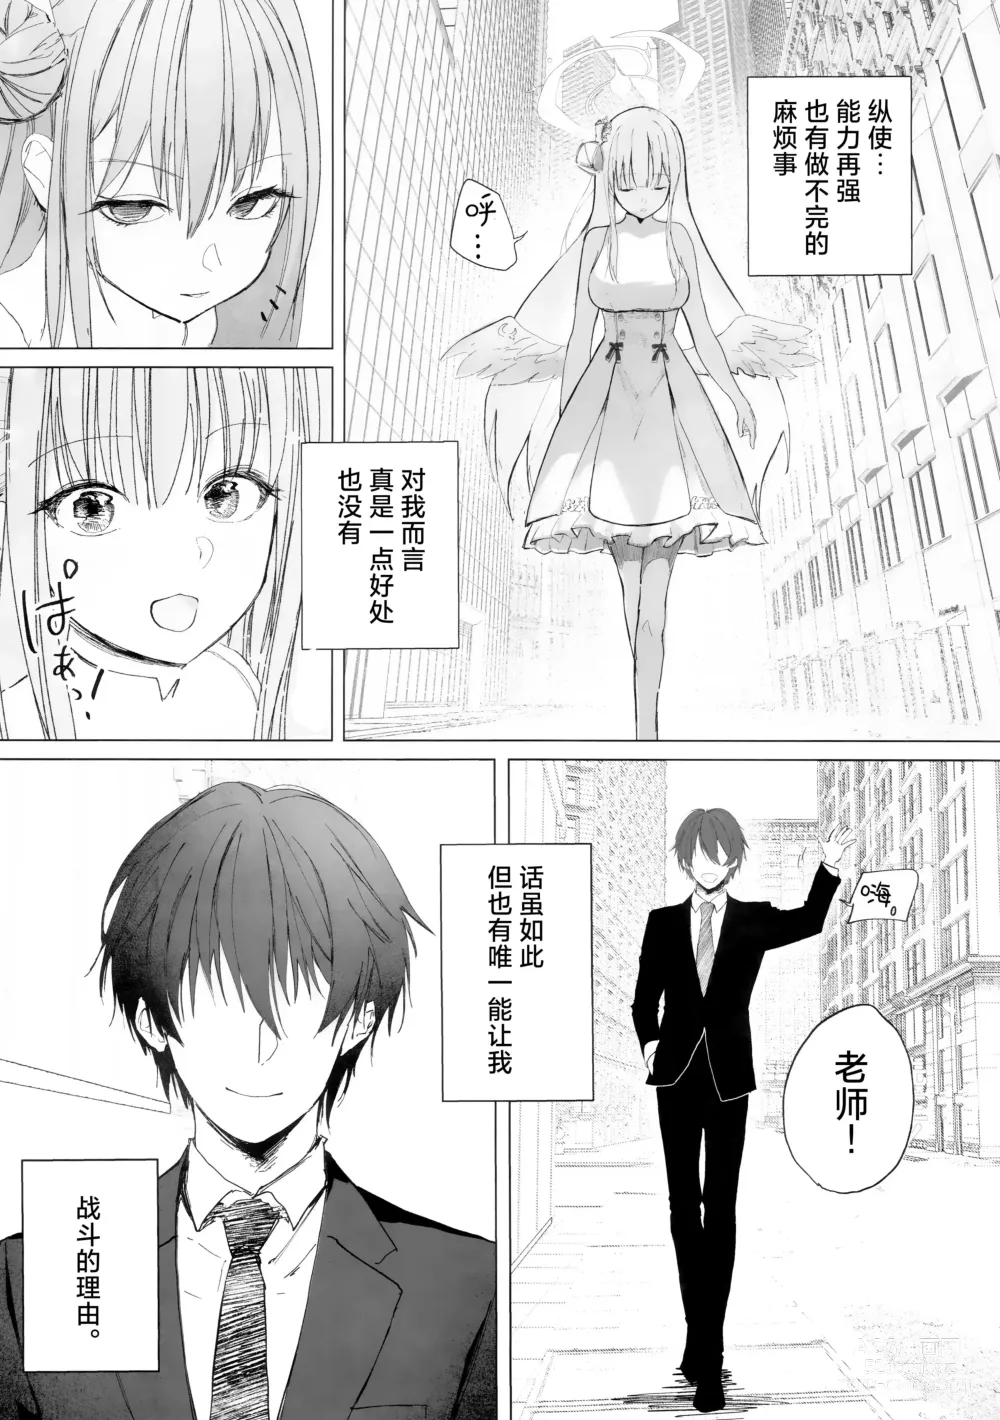 Page 5 of doujinshi 新约 挥发性的幸福